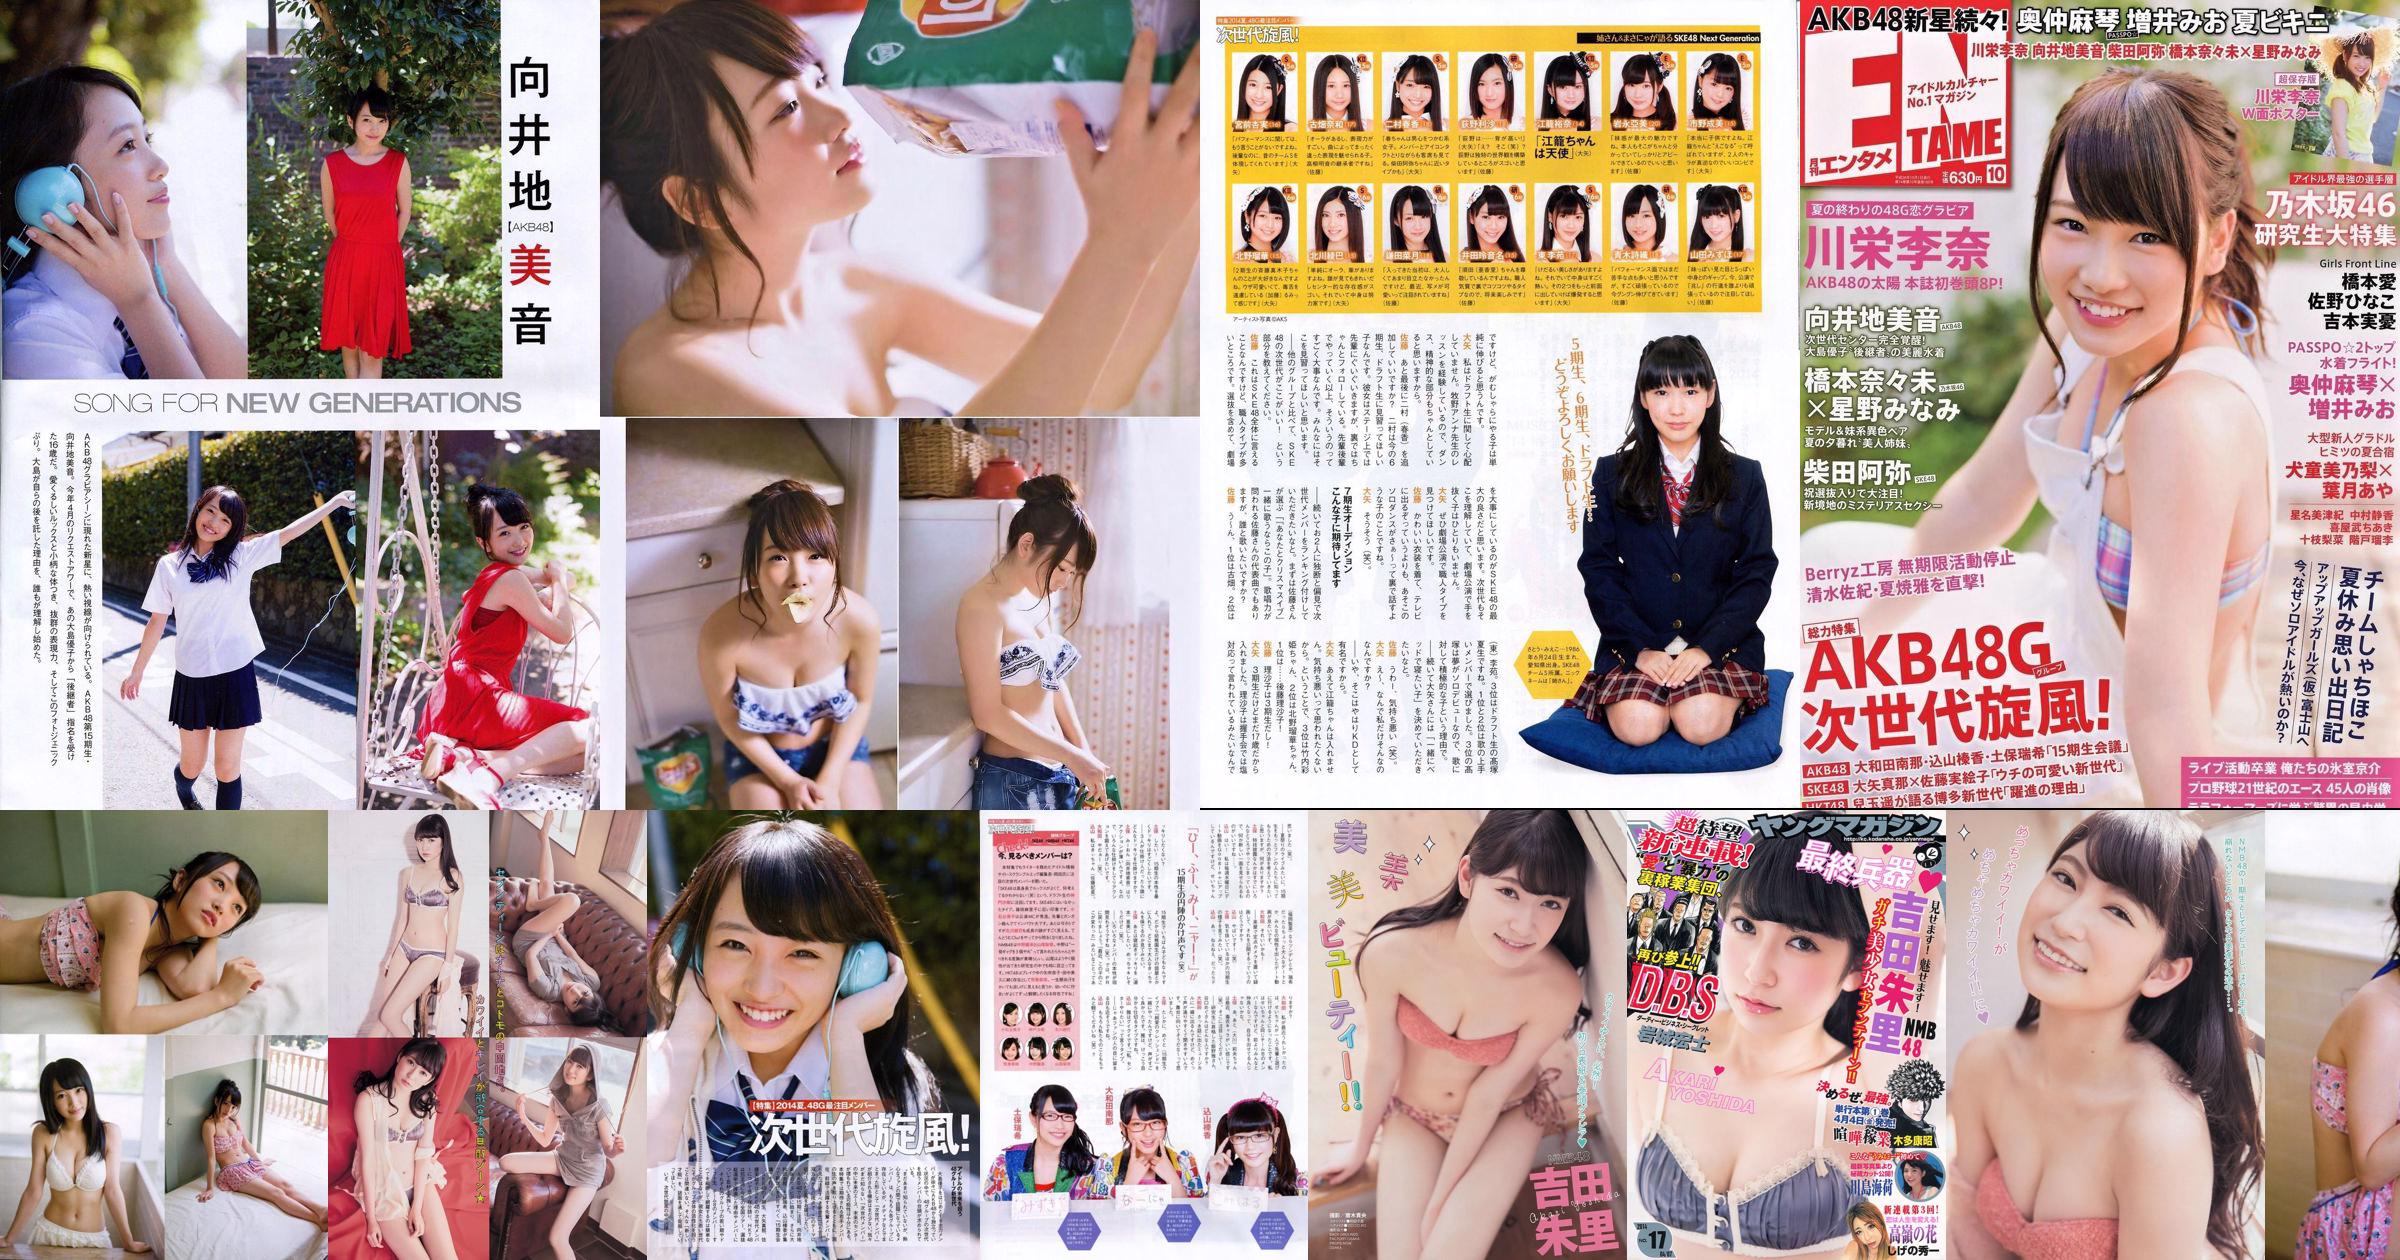 [Young Magazine] Akari Yoshida Umika Kawashima 2014 No.17 Photograph No.765ff8 Page 1